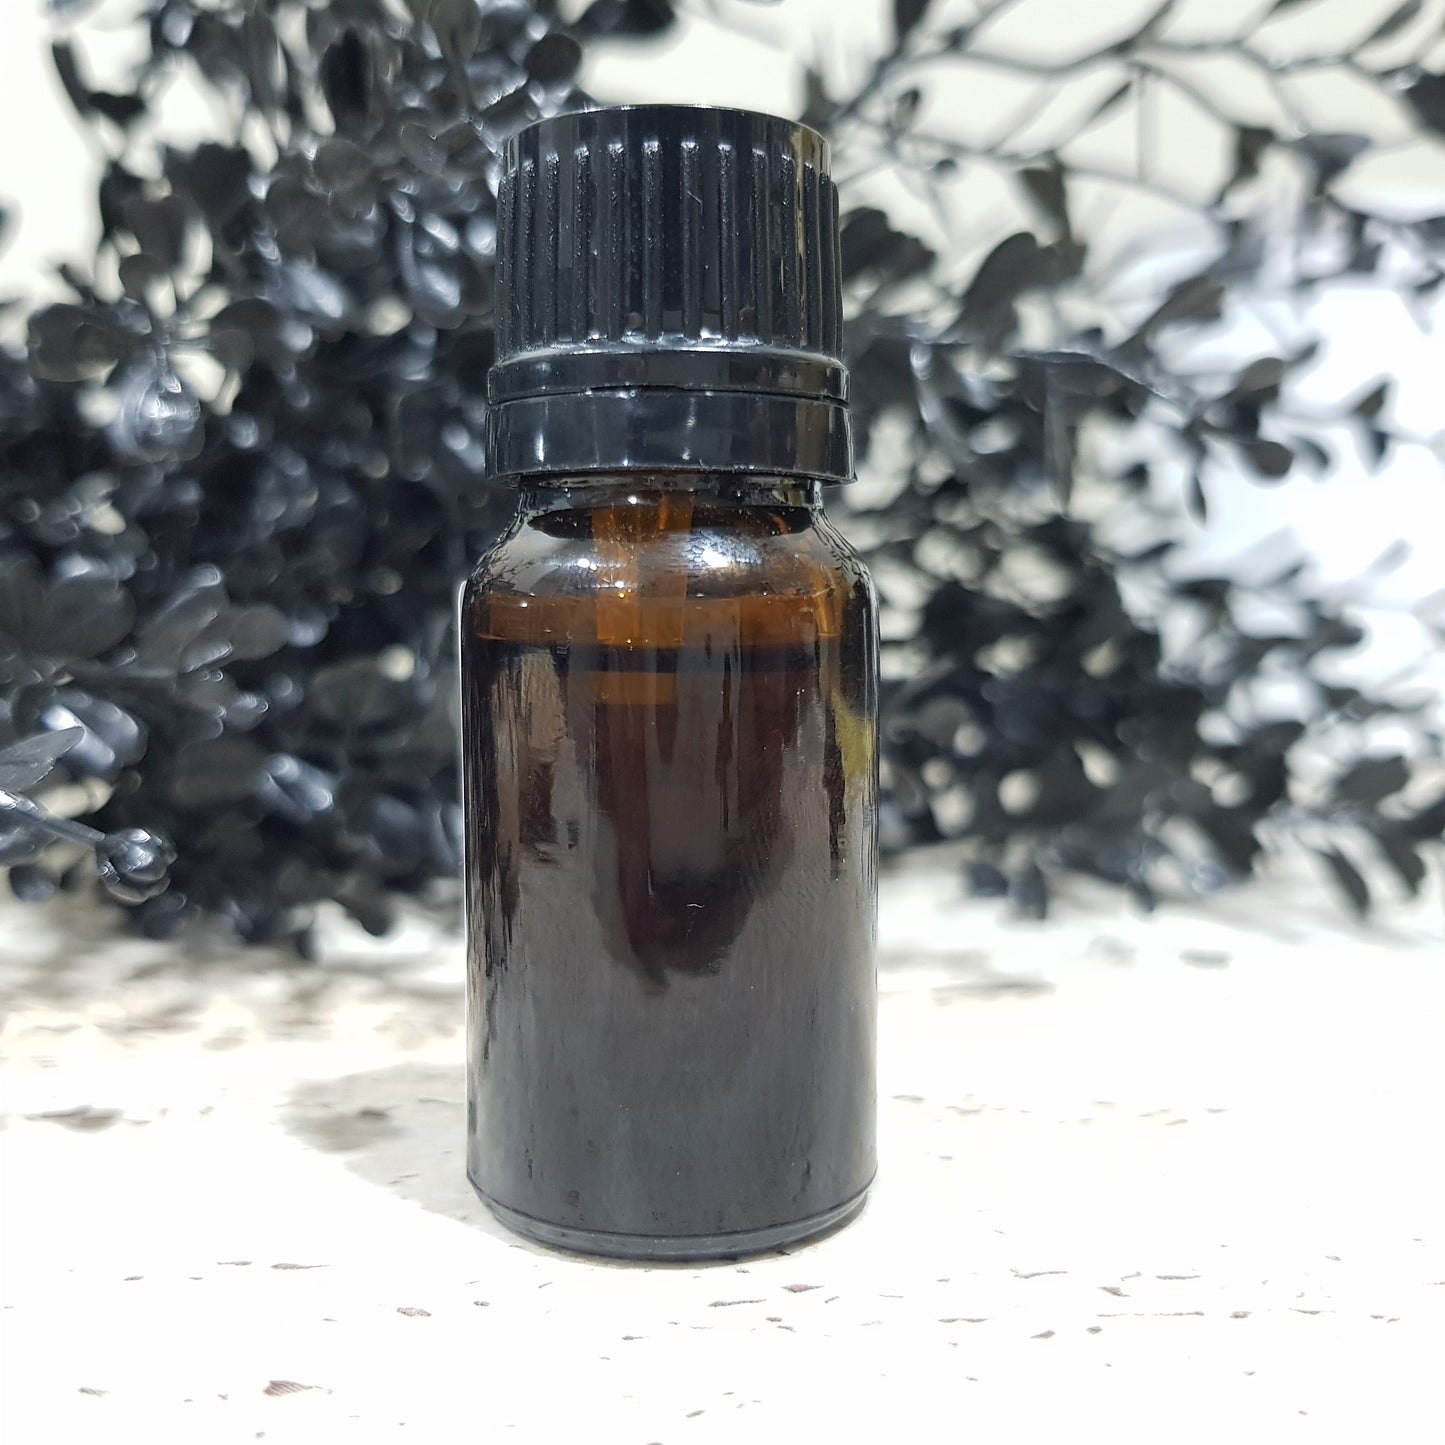 Tuberose & Agave Nectar - 10ml Fragrance Oil